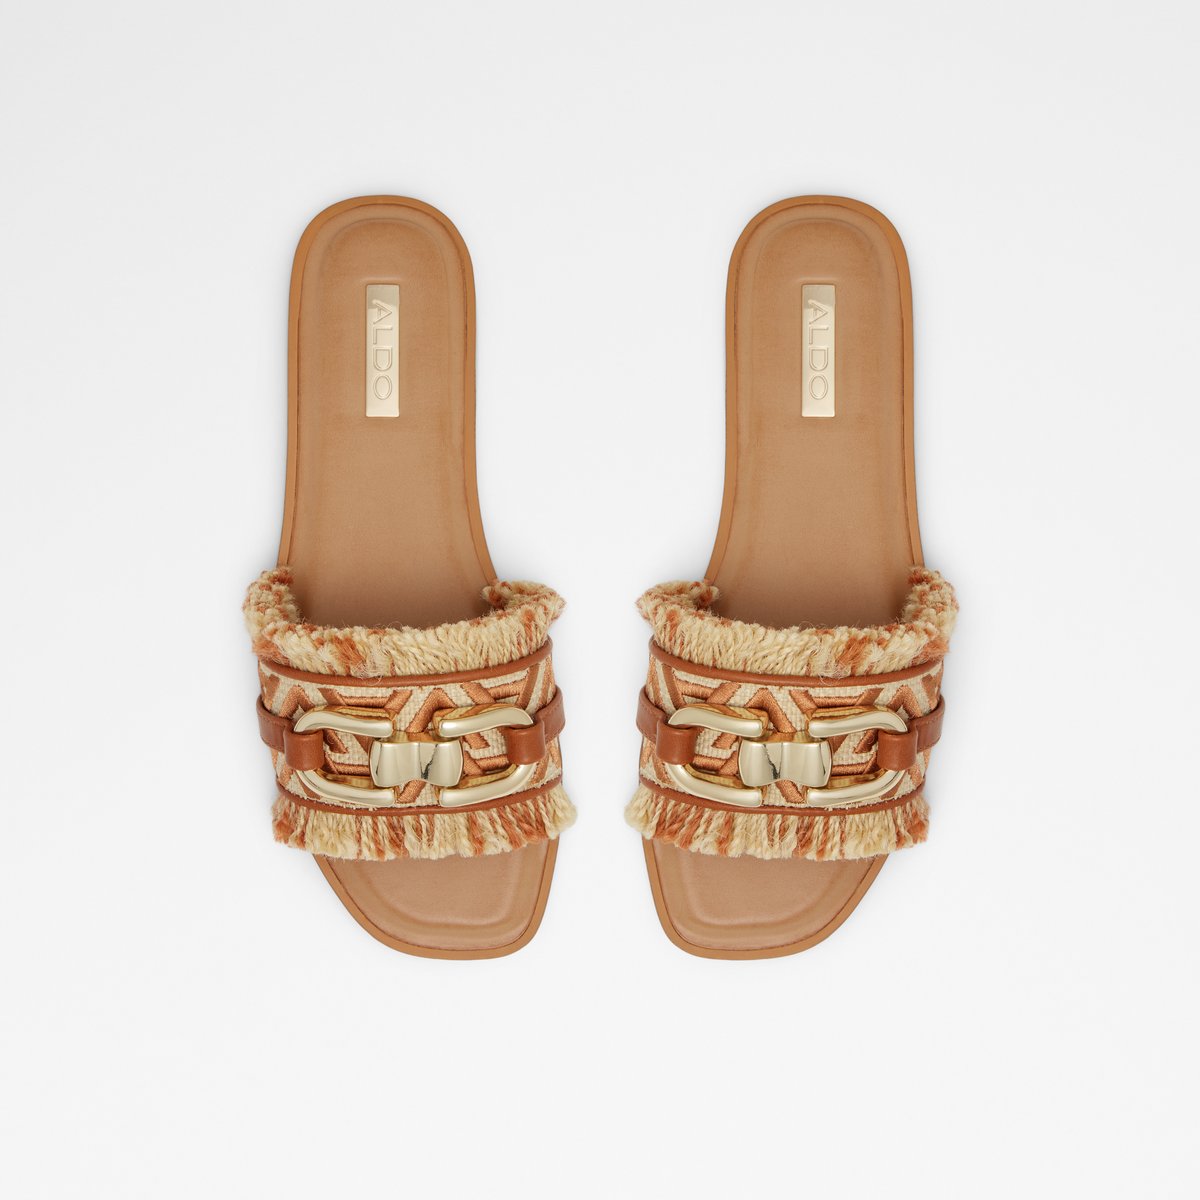 Fringie Women Shoes - Medium Brown - ALDO KSA